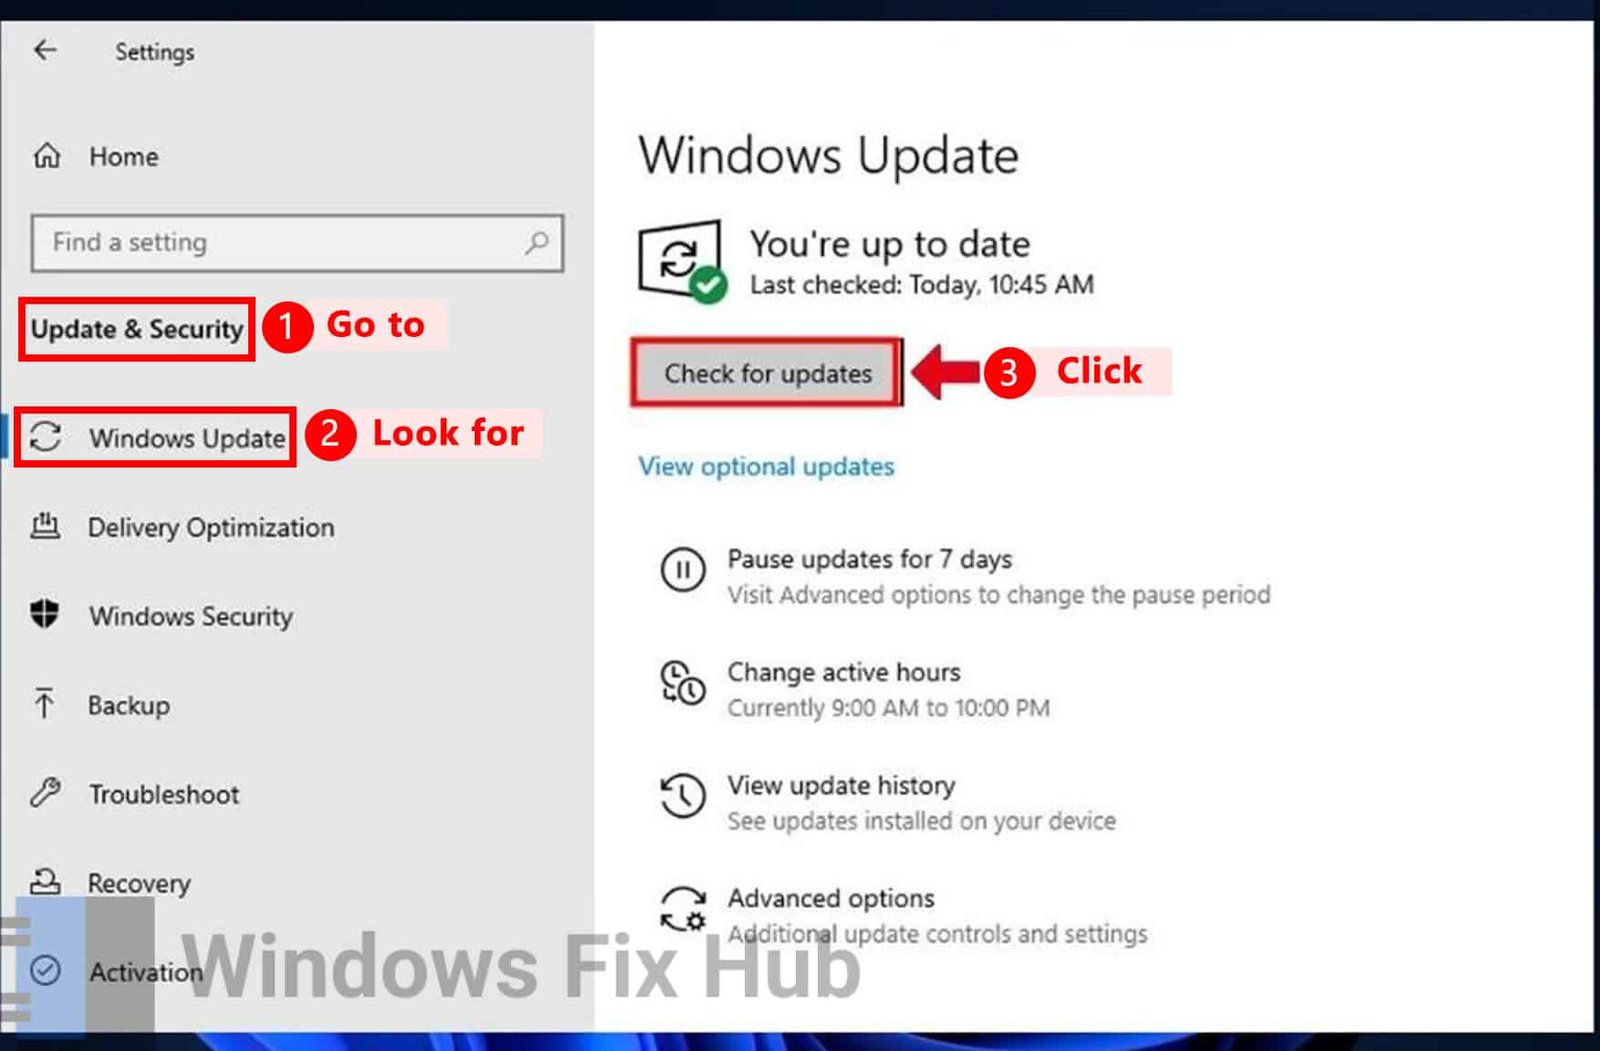 Check for Updates under Windows Update